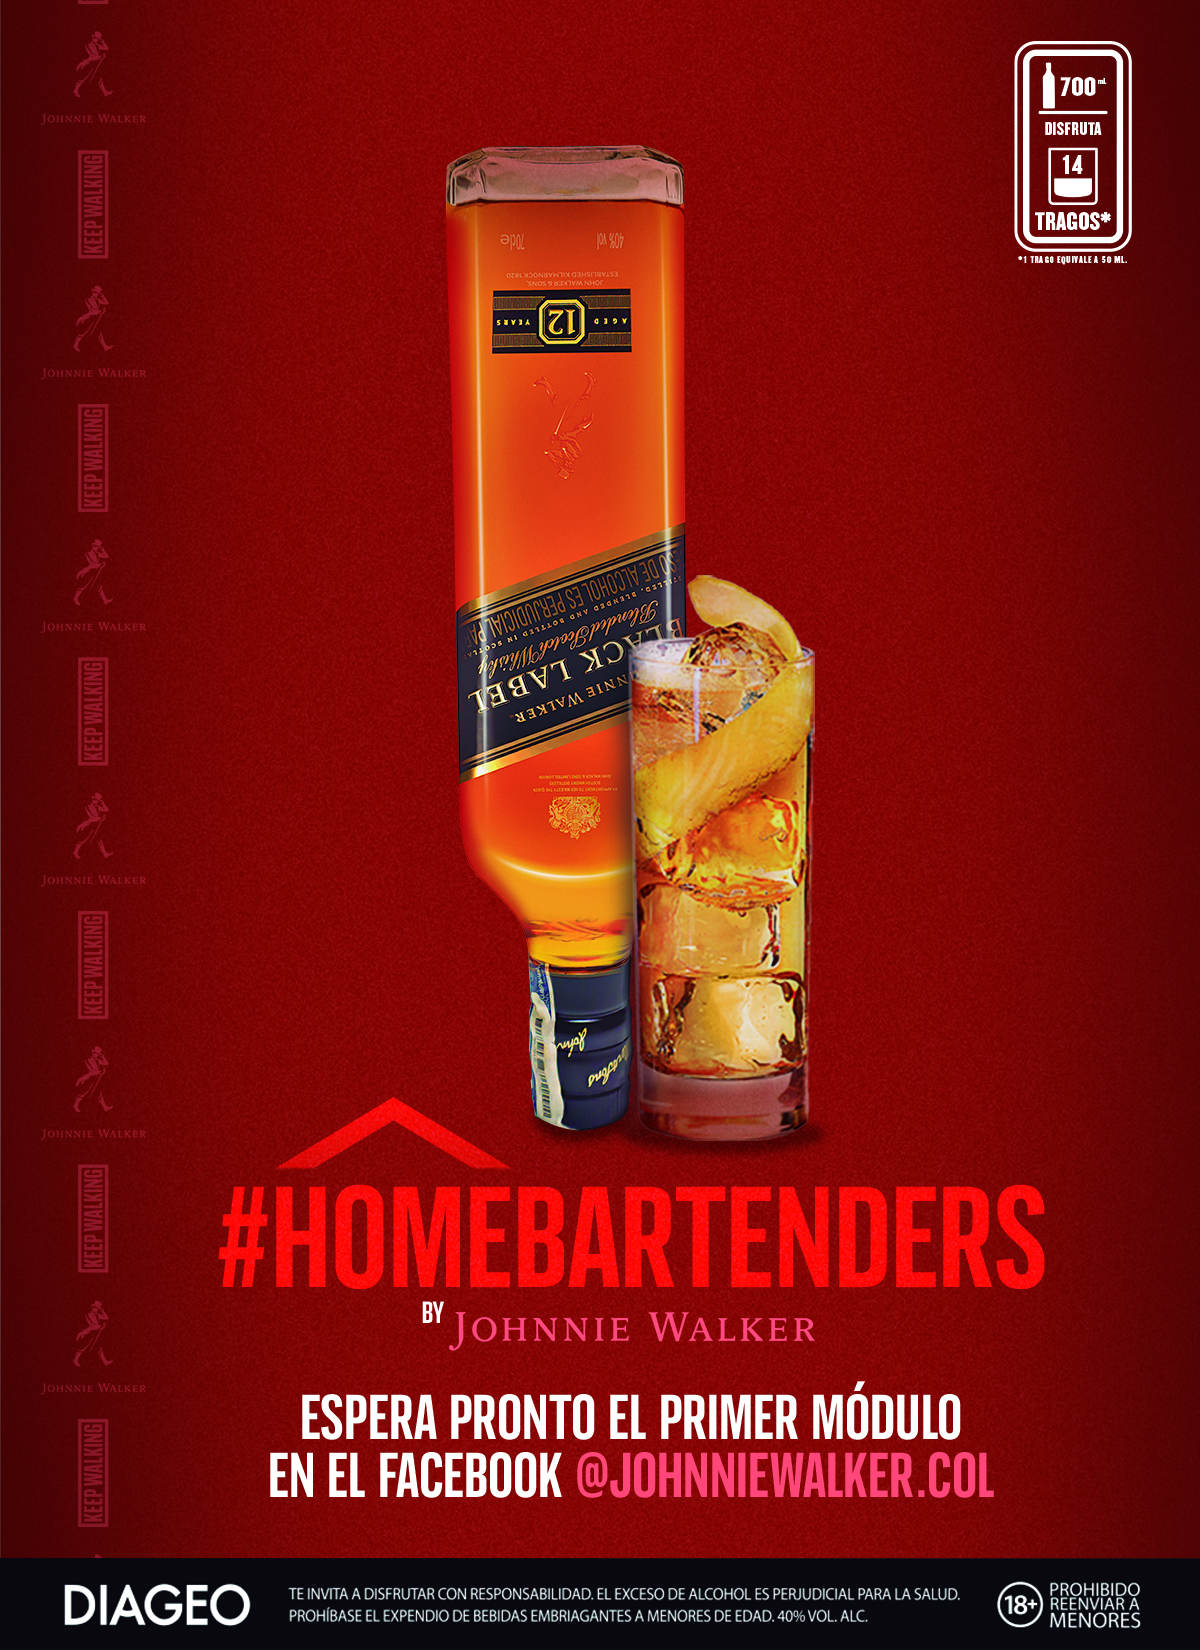 Home Bartenders by Johnnie Walker